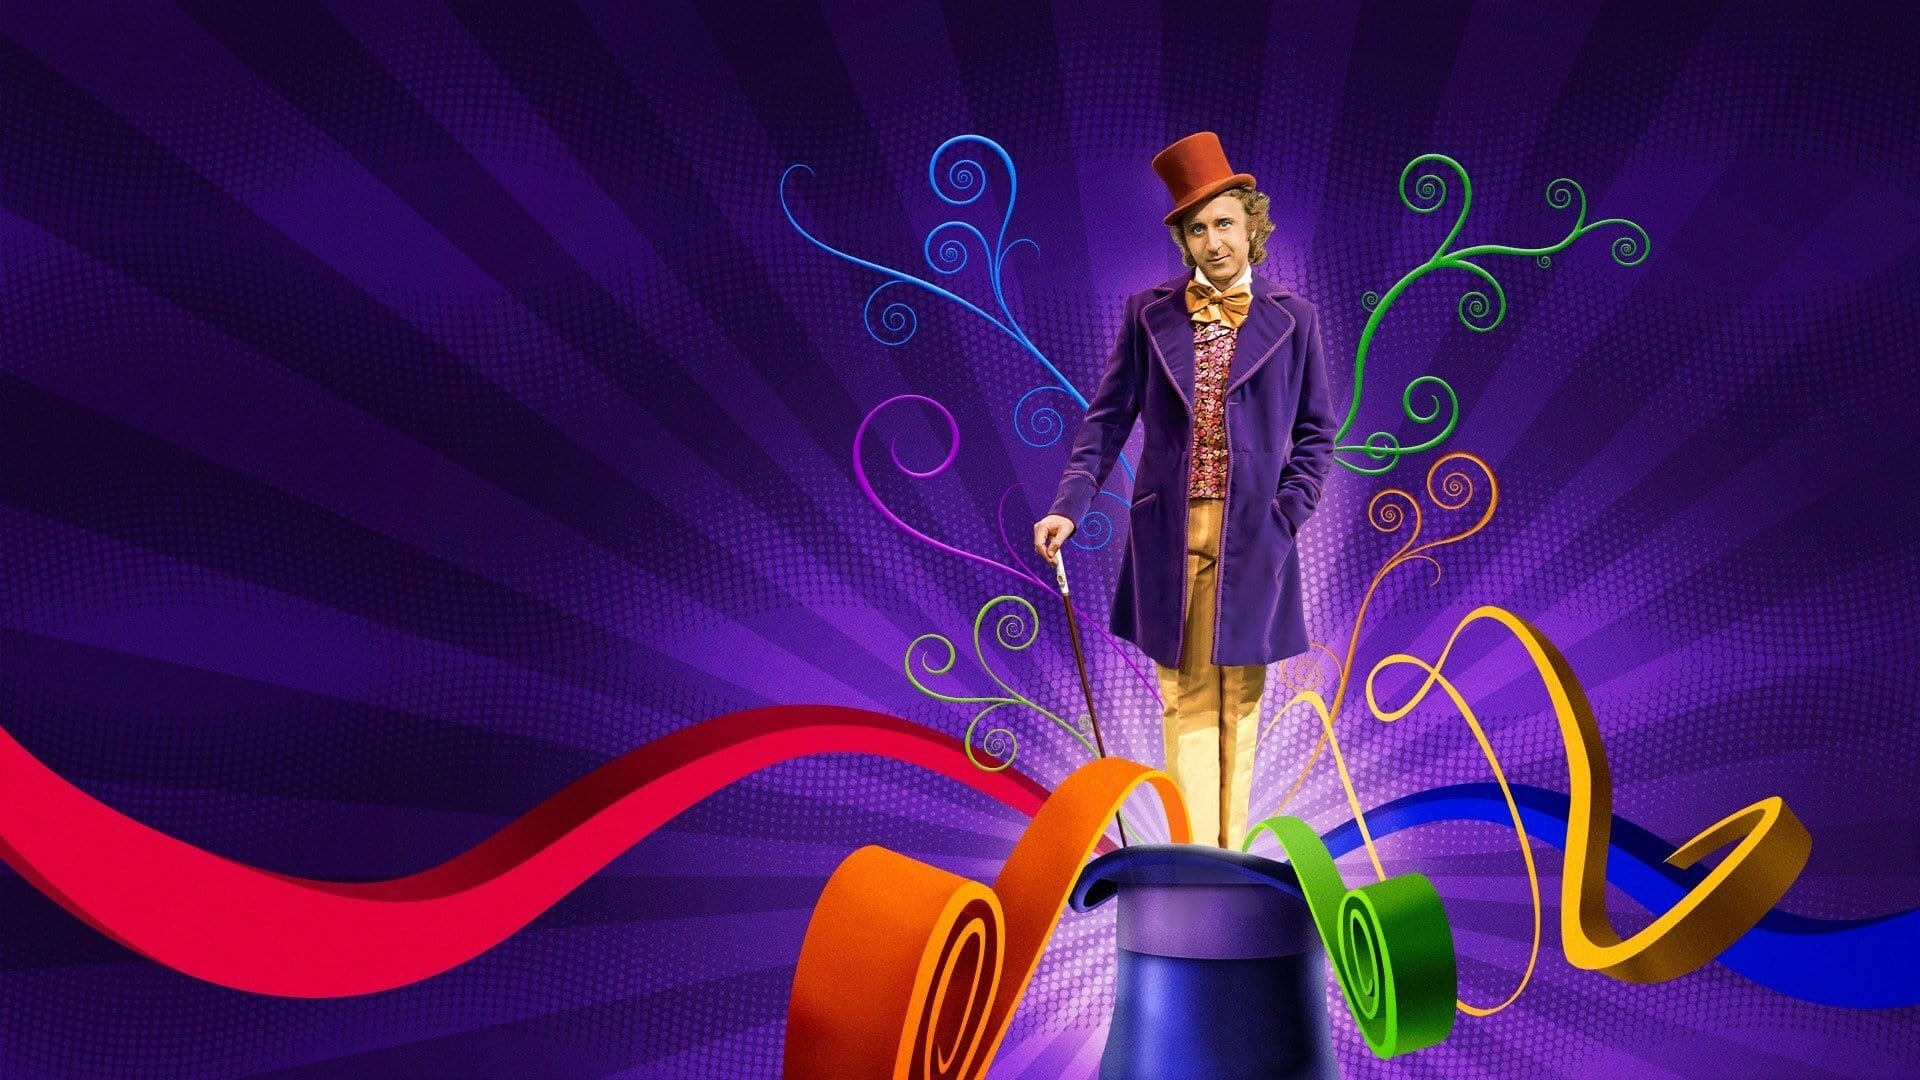 Willy Wonka și fabrica de ciocolată